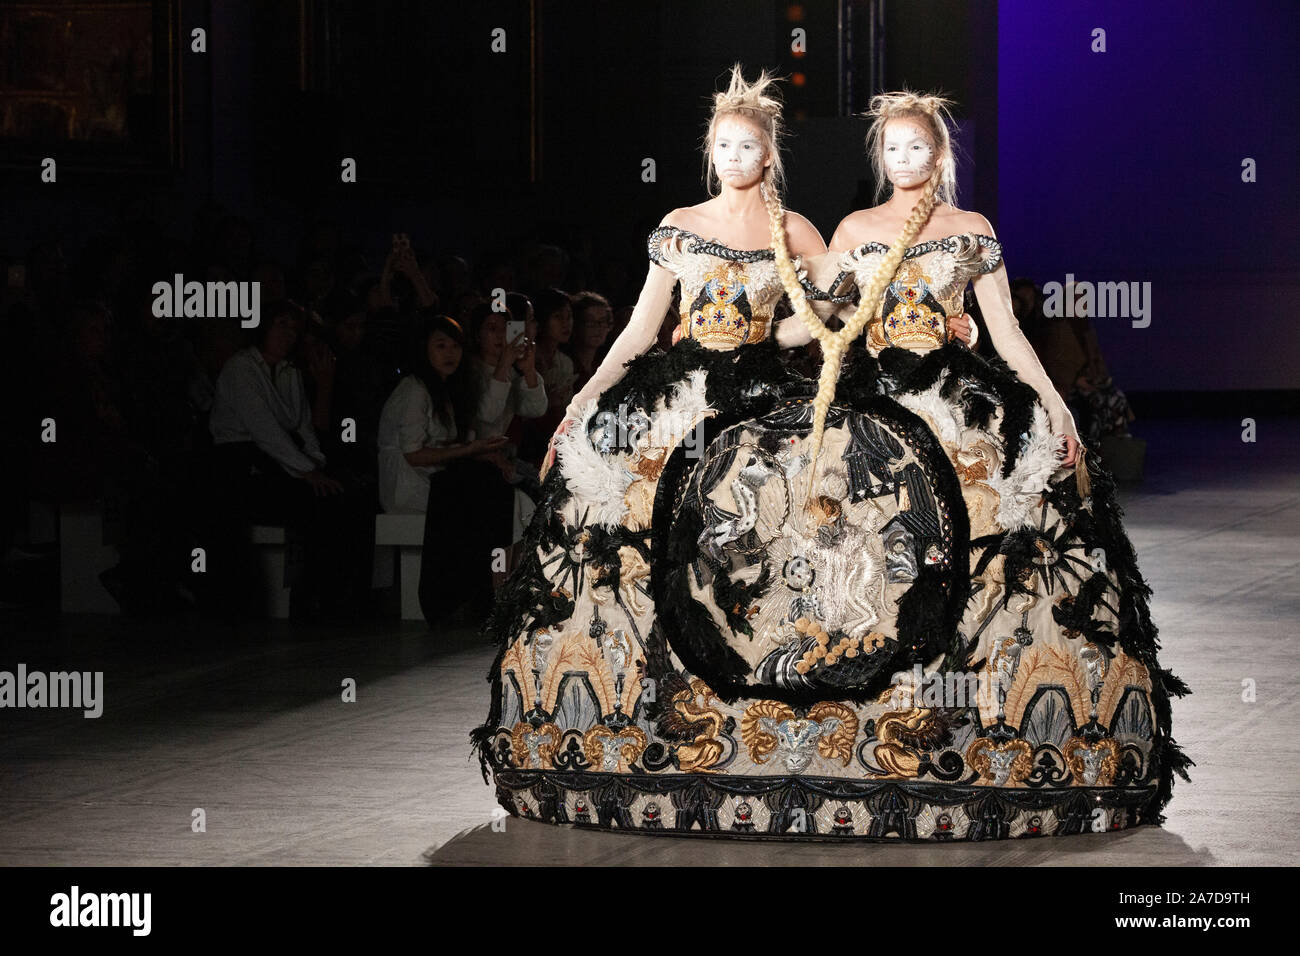 Chinesische Mode Designer Guo Pei, berühmt für die gelbe "Omelette" Kleid,  das Sie für Rhianna am 2015 Met Gala, präsentiert Stücke aus Ihrem AW  2019/20 'Alternate Universe Couture Kollektion an der V&A